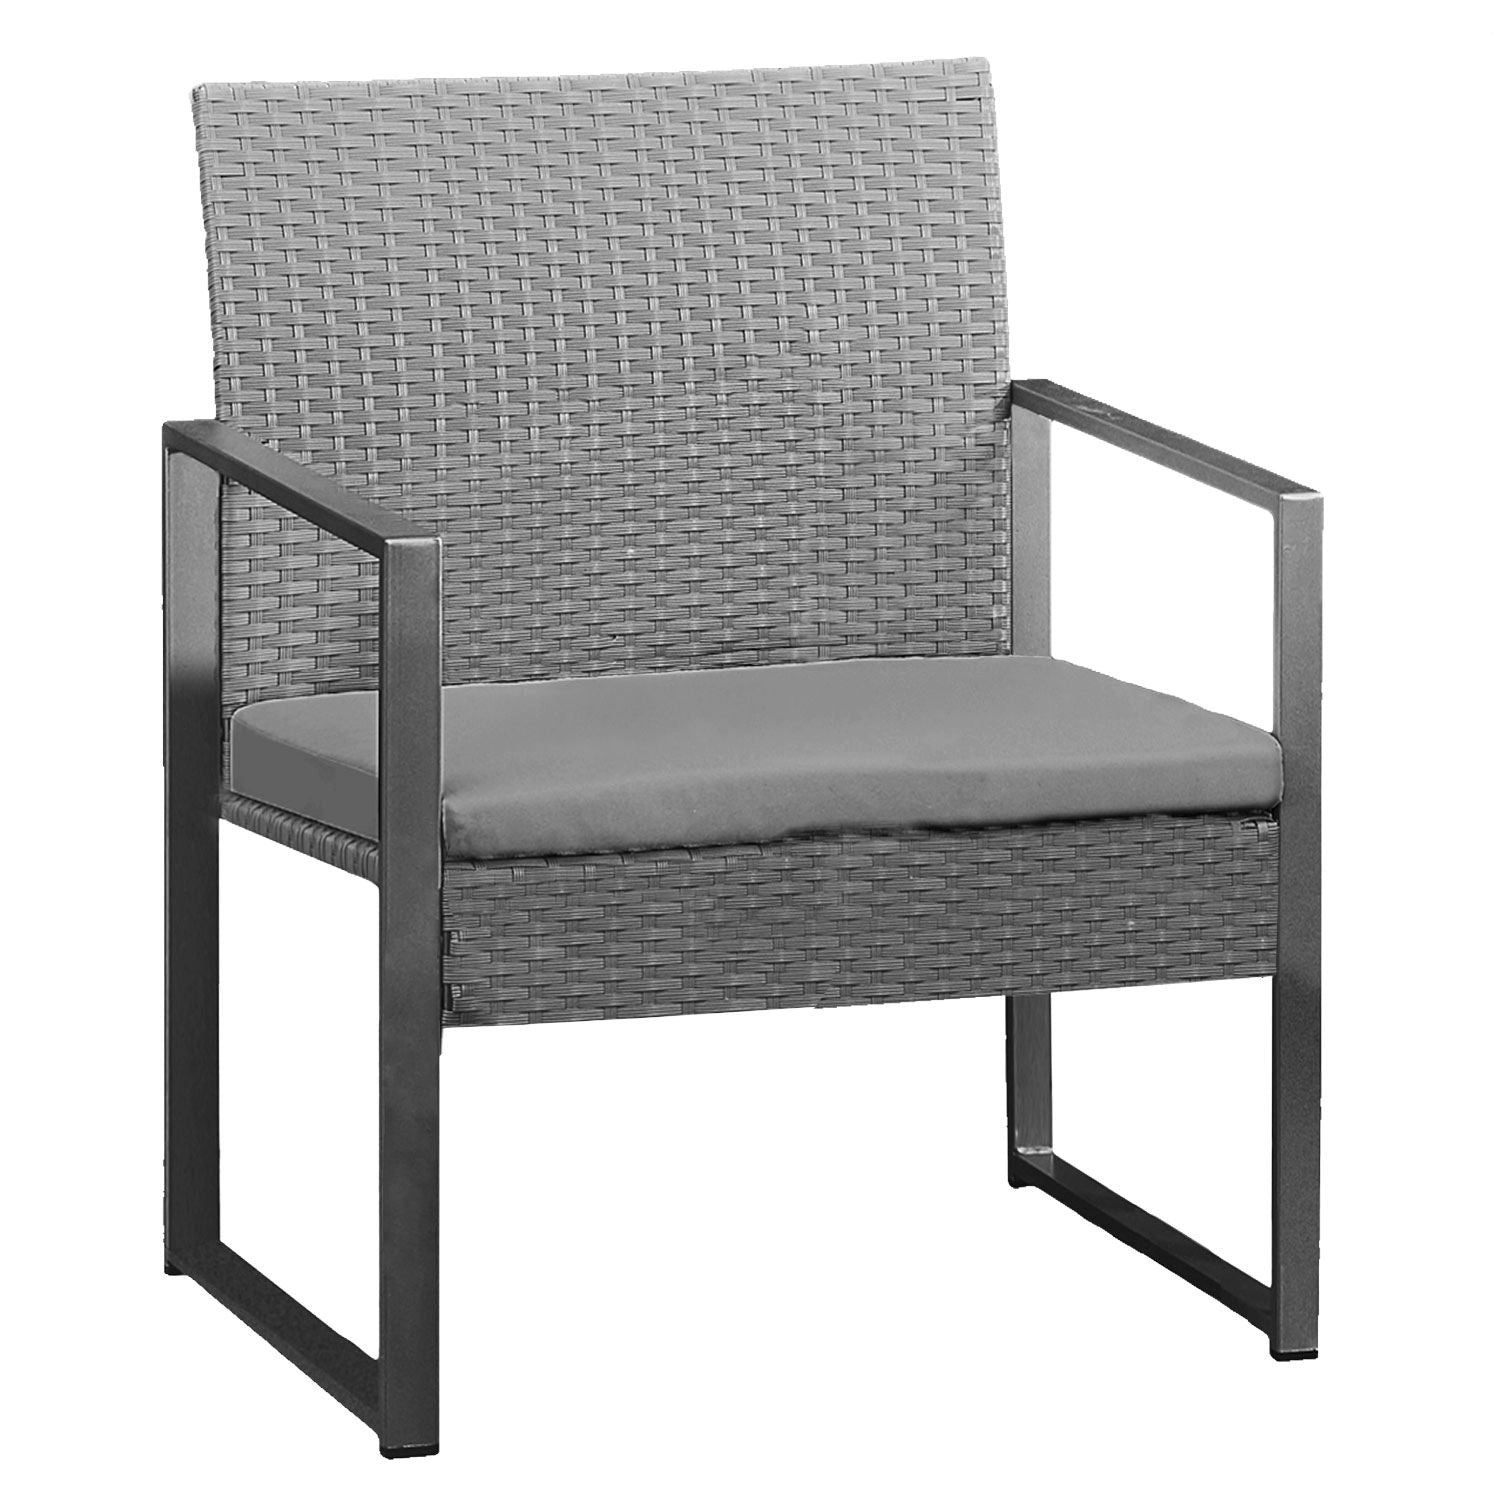 CAPRERA - Mueble de jardín de resina tejida con estructura de acero gris